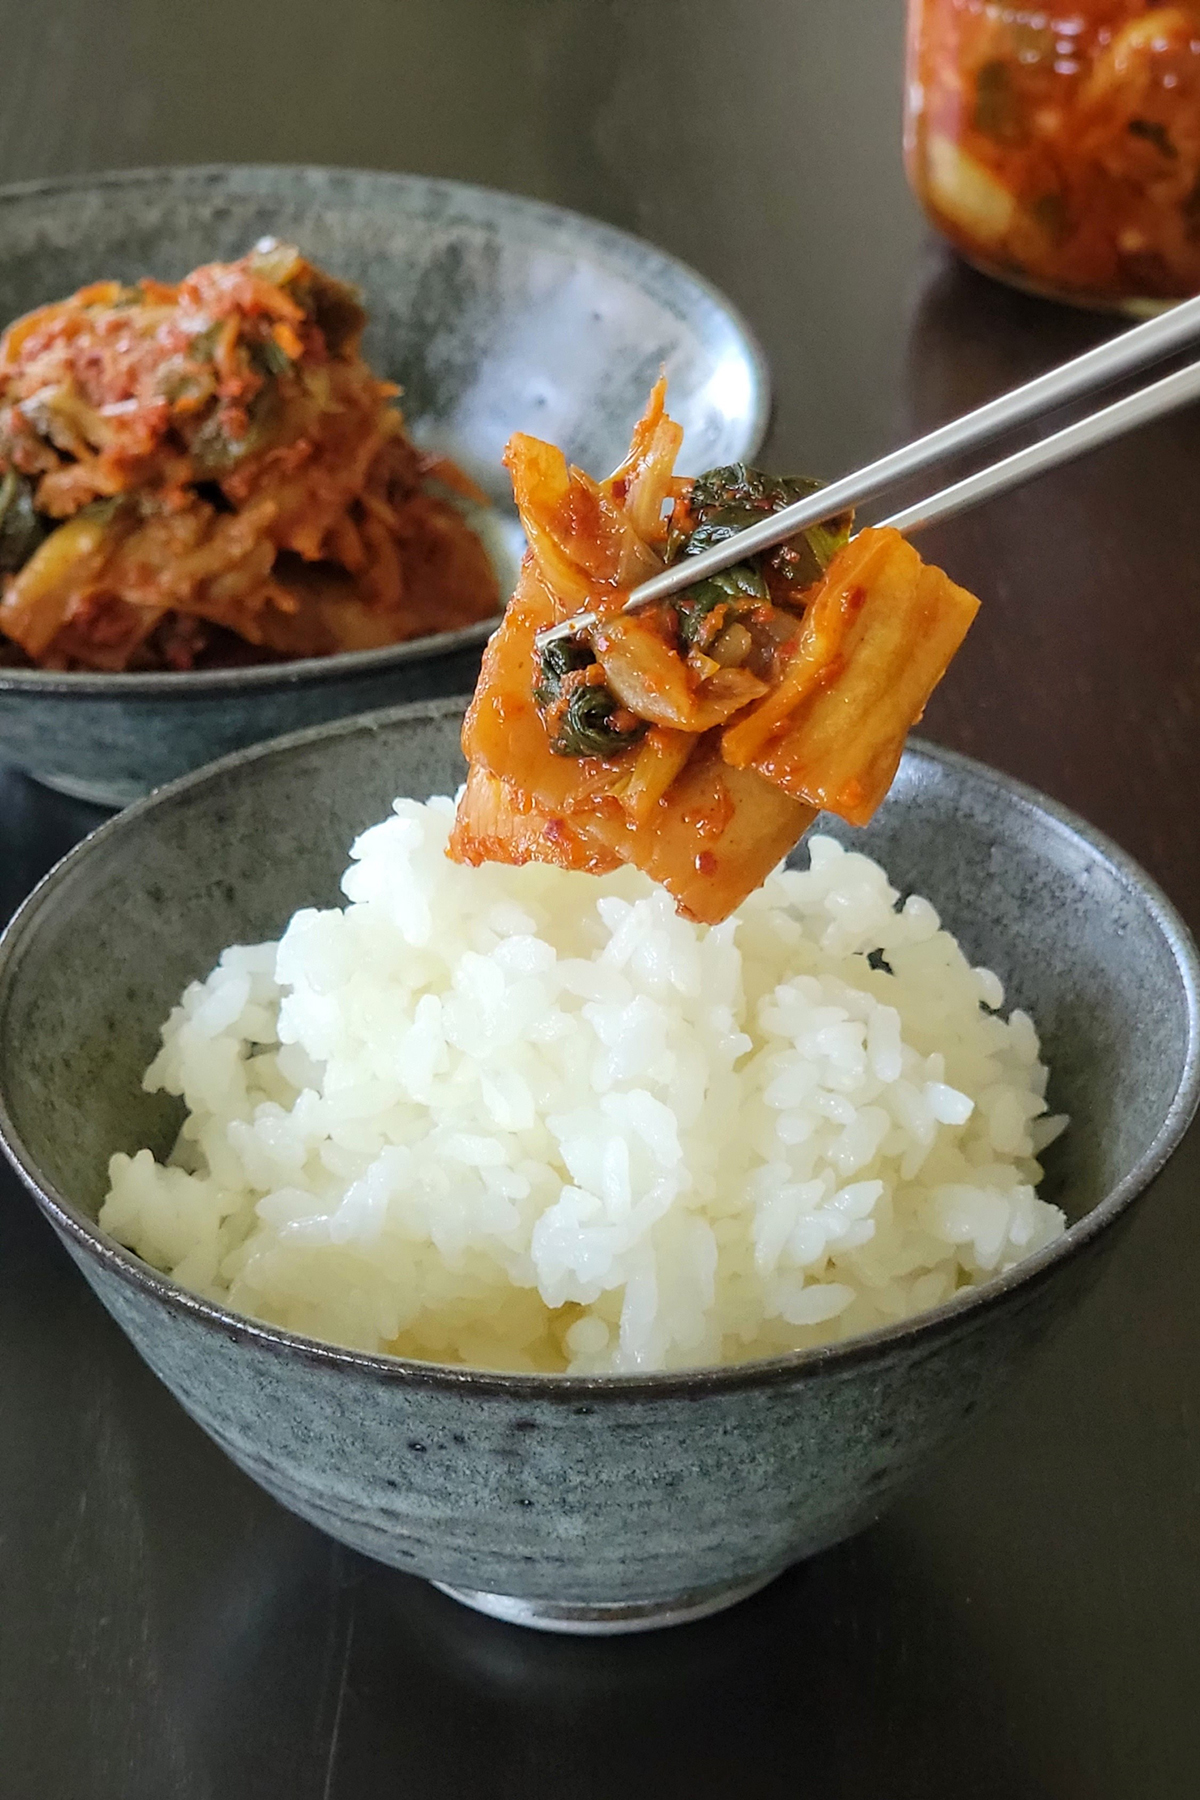 Immagini Stock - Il Kimchi Coreano Mescola Gli Spaghetti Di Riso Fritti.  Image 210339181